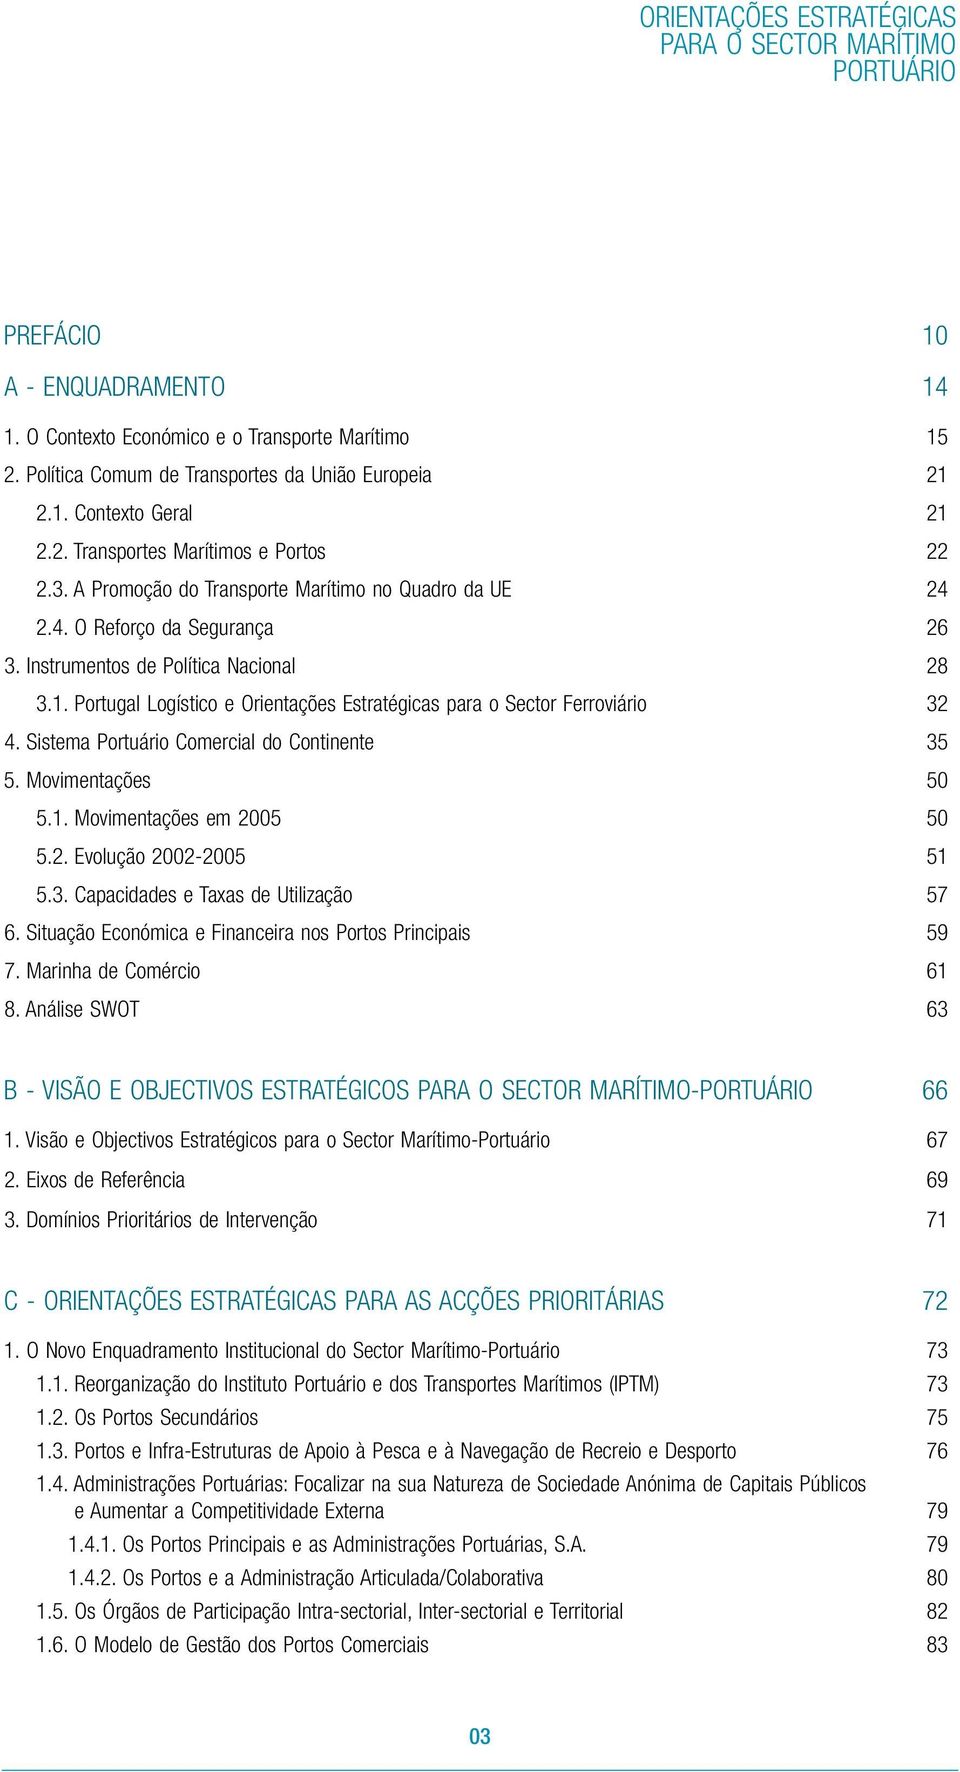 Portugal Logístico e Orientações Estratégicas para o Sector Ferroviário 32 4. Sistema Portuário Comercial do Continente 35 5. Movimentações 50 5.1. Movimentações em 2005 50 5.2. Evolução 2002-2005 51 5.